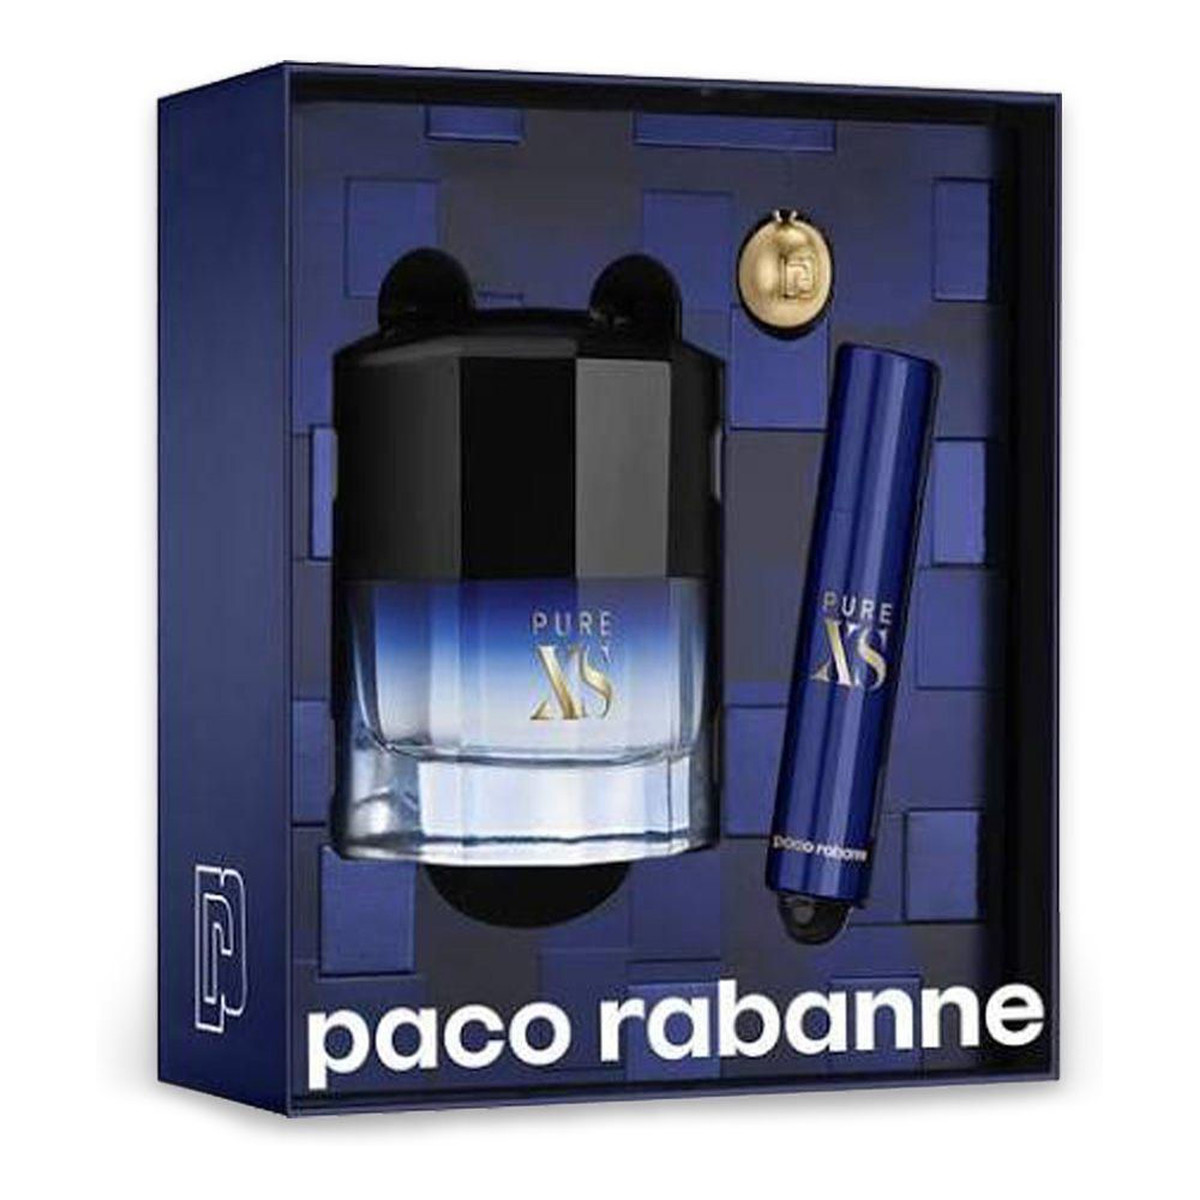 Paco Rabanne Pure XS Zestaw woda toaletowa spray 50ml + miniatura wody toaletowej 10ml + breloczek